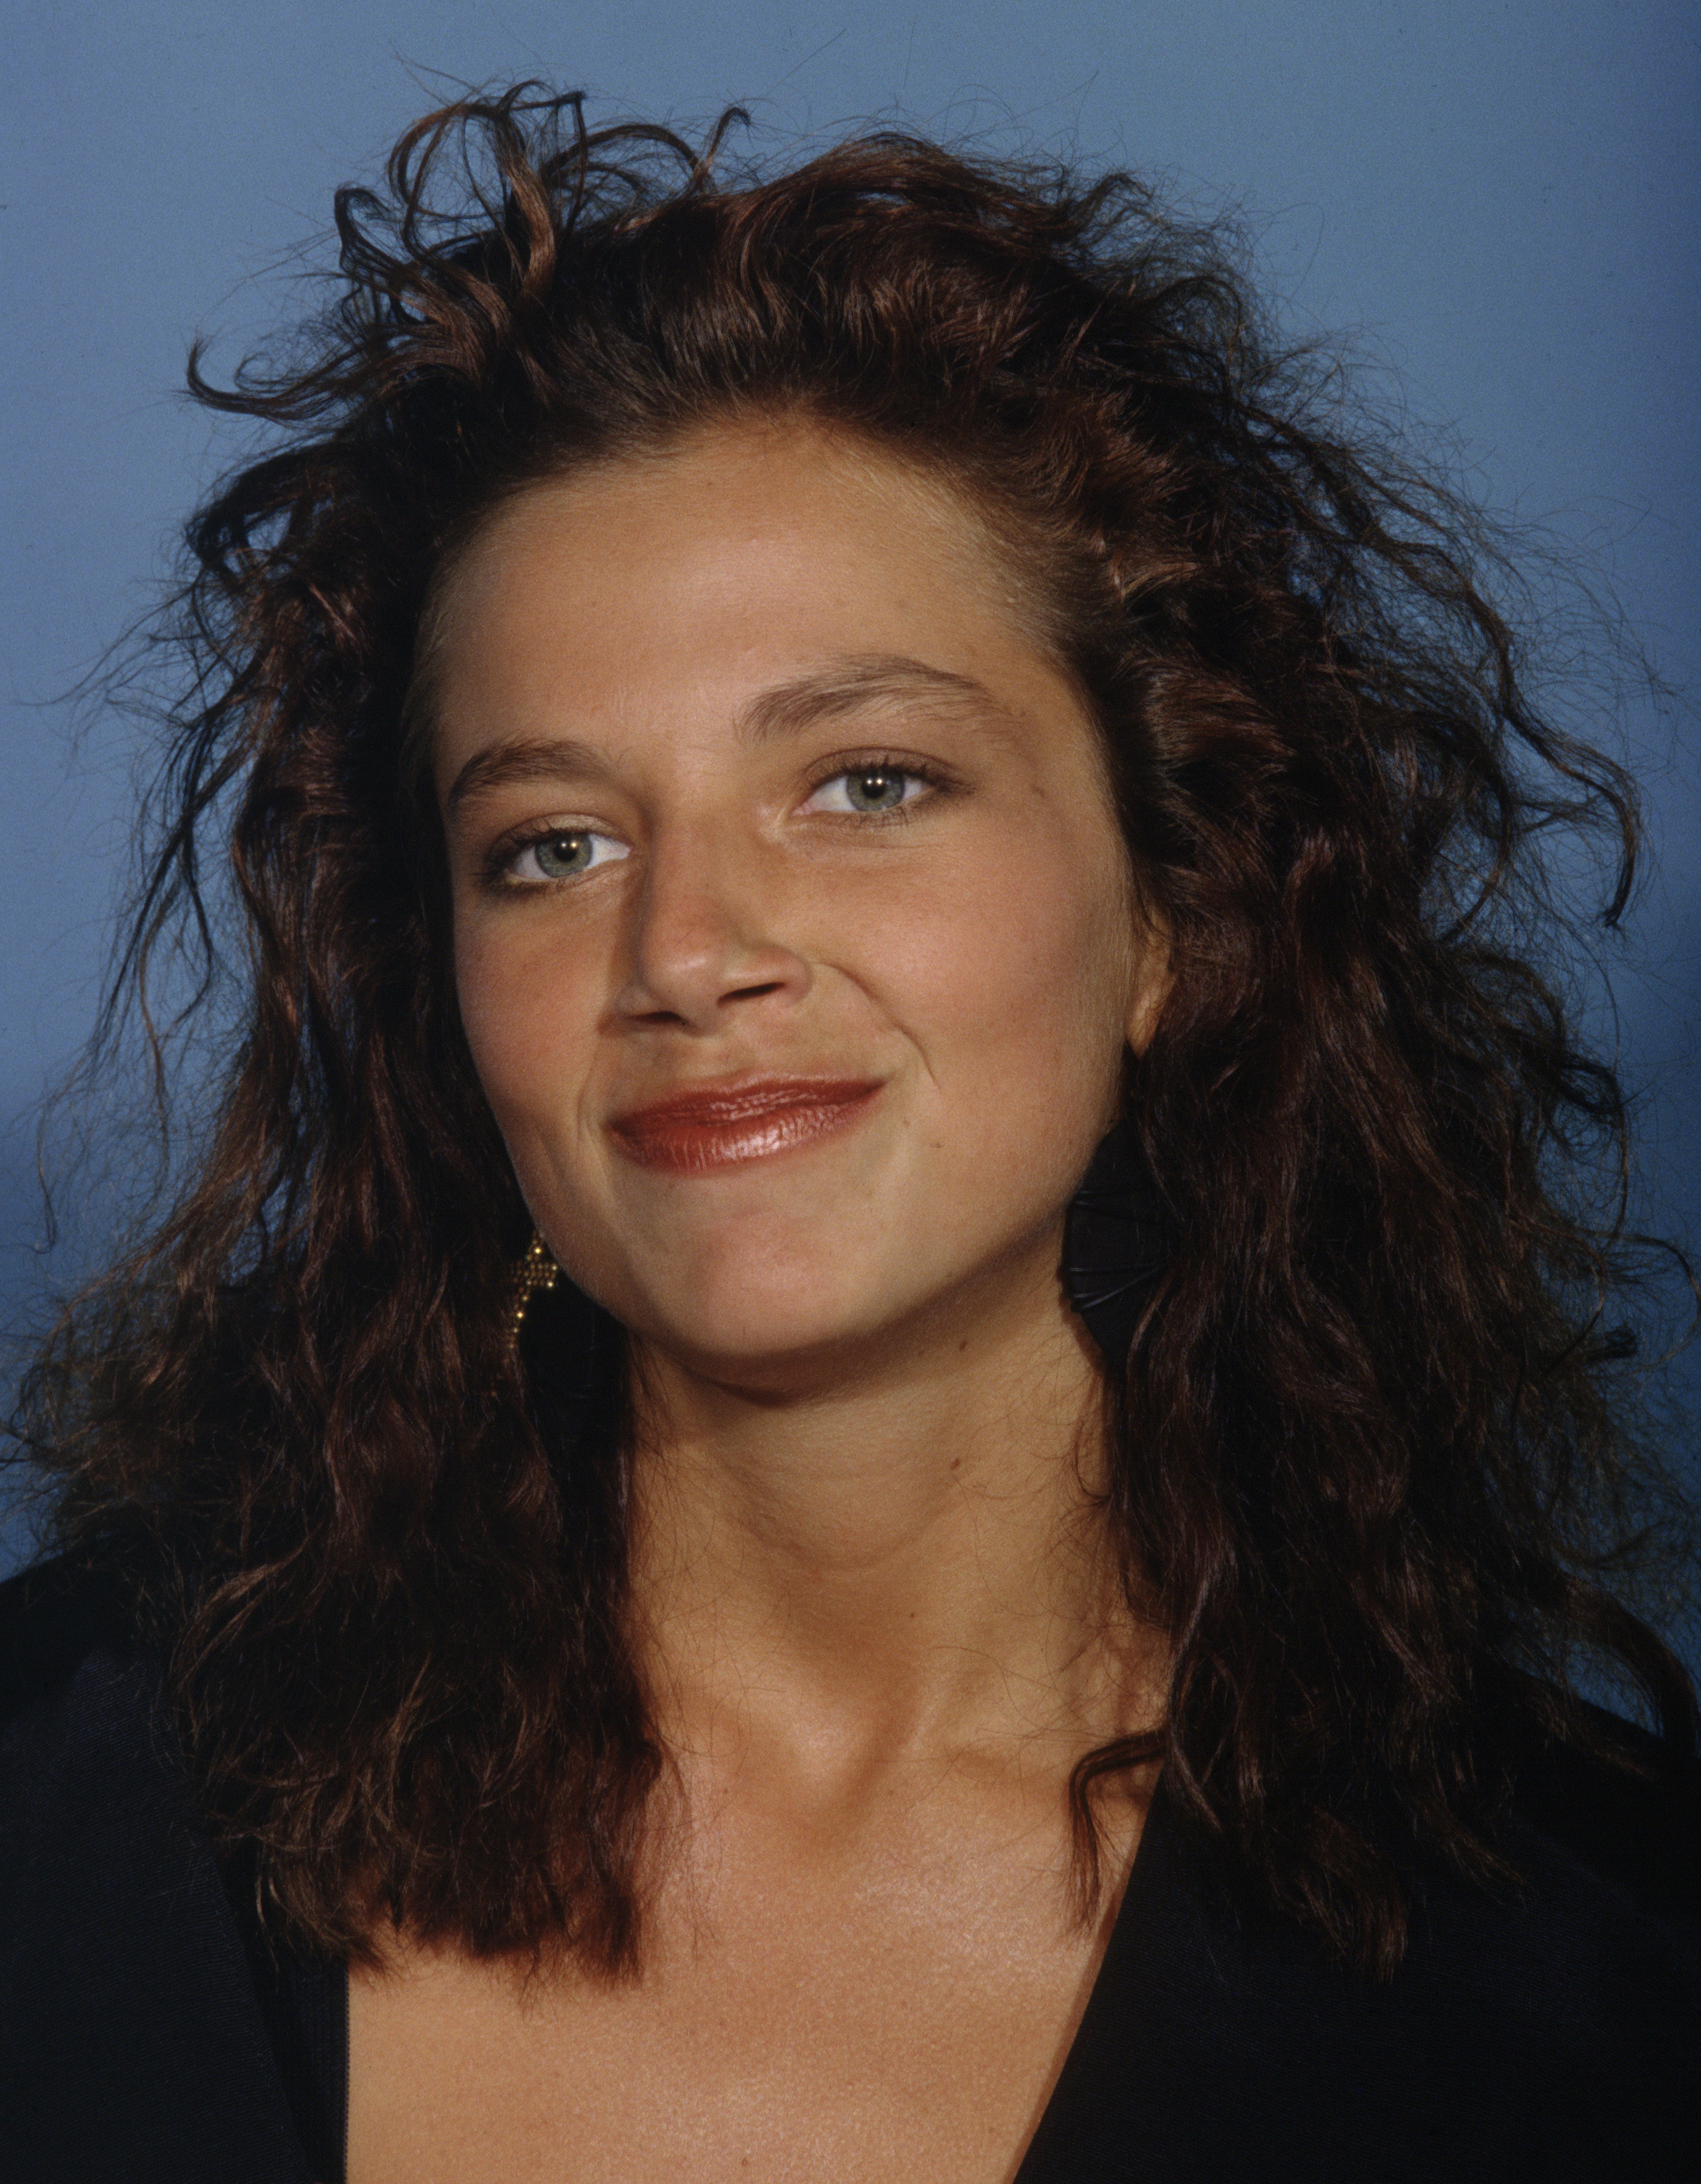 Justine Bateman on September 20, 1987 | Source: Getty Images